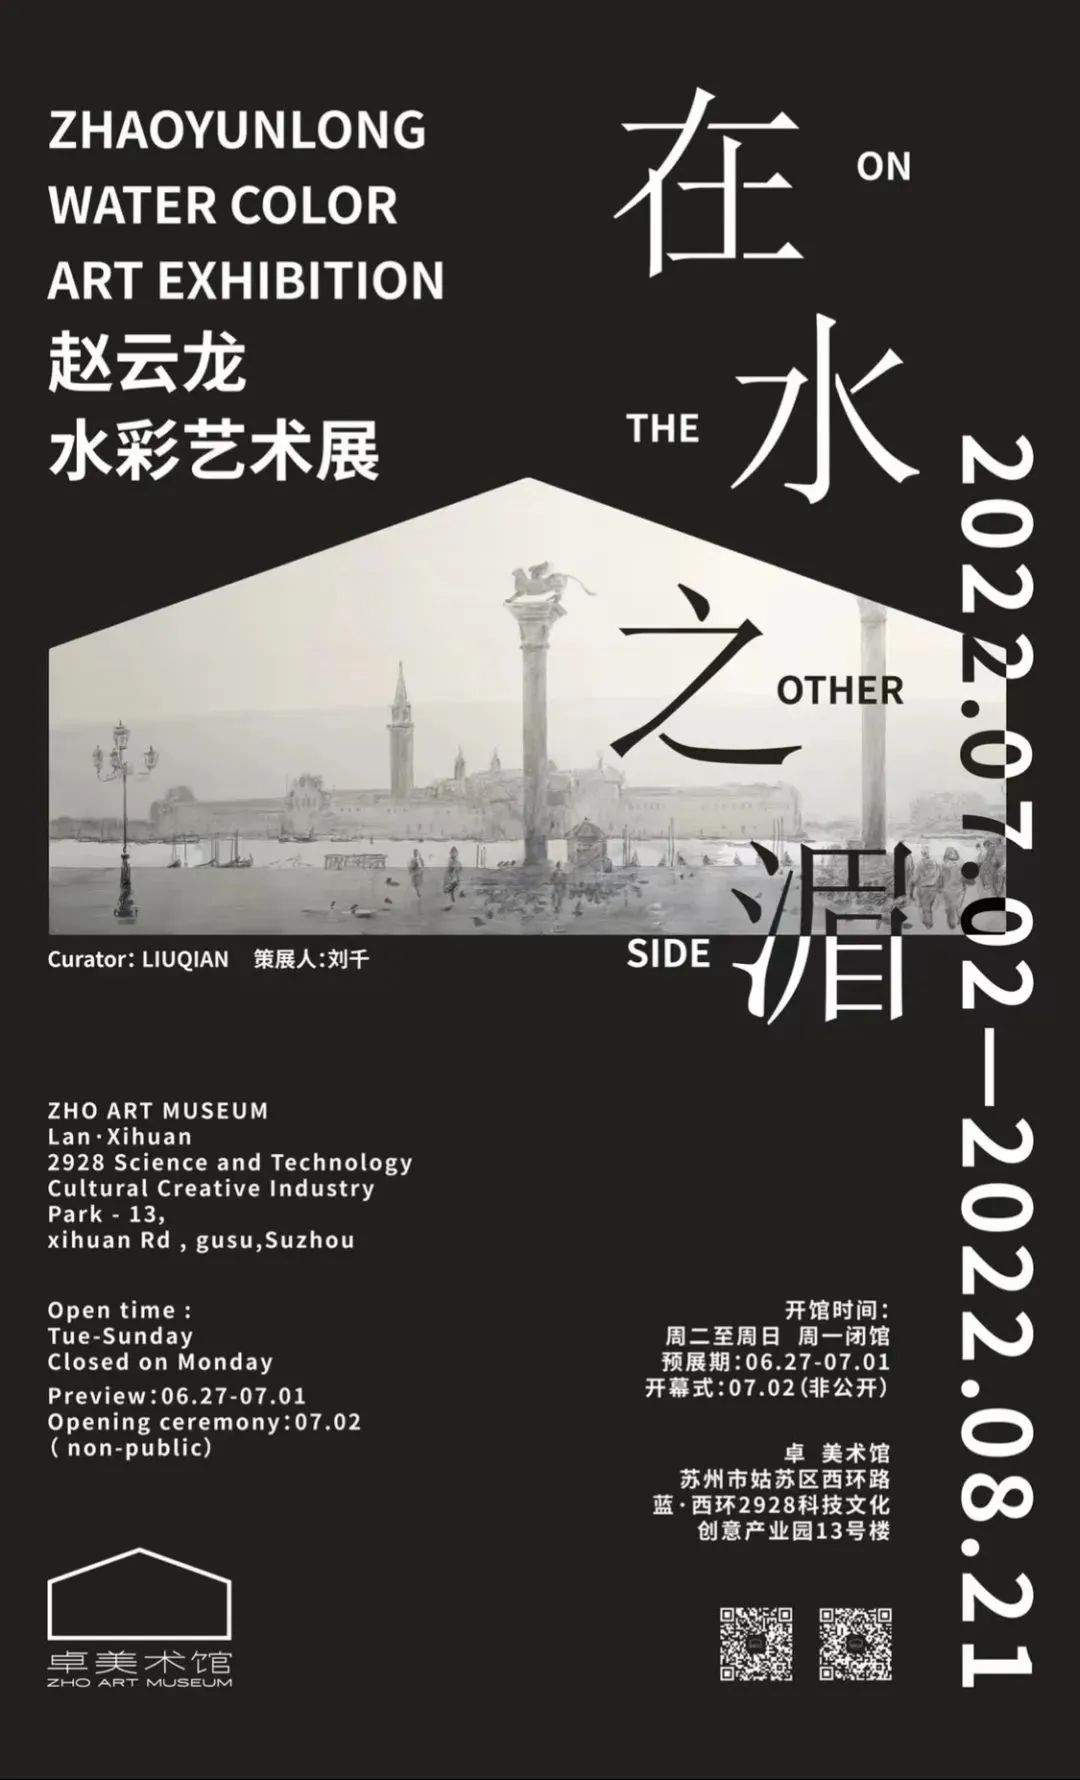 “在水之湄——赵云龙水彩艺术展”7月2日于苏州开展，展现东西方水滨之美